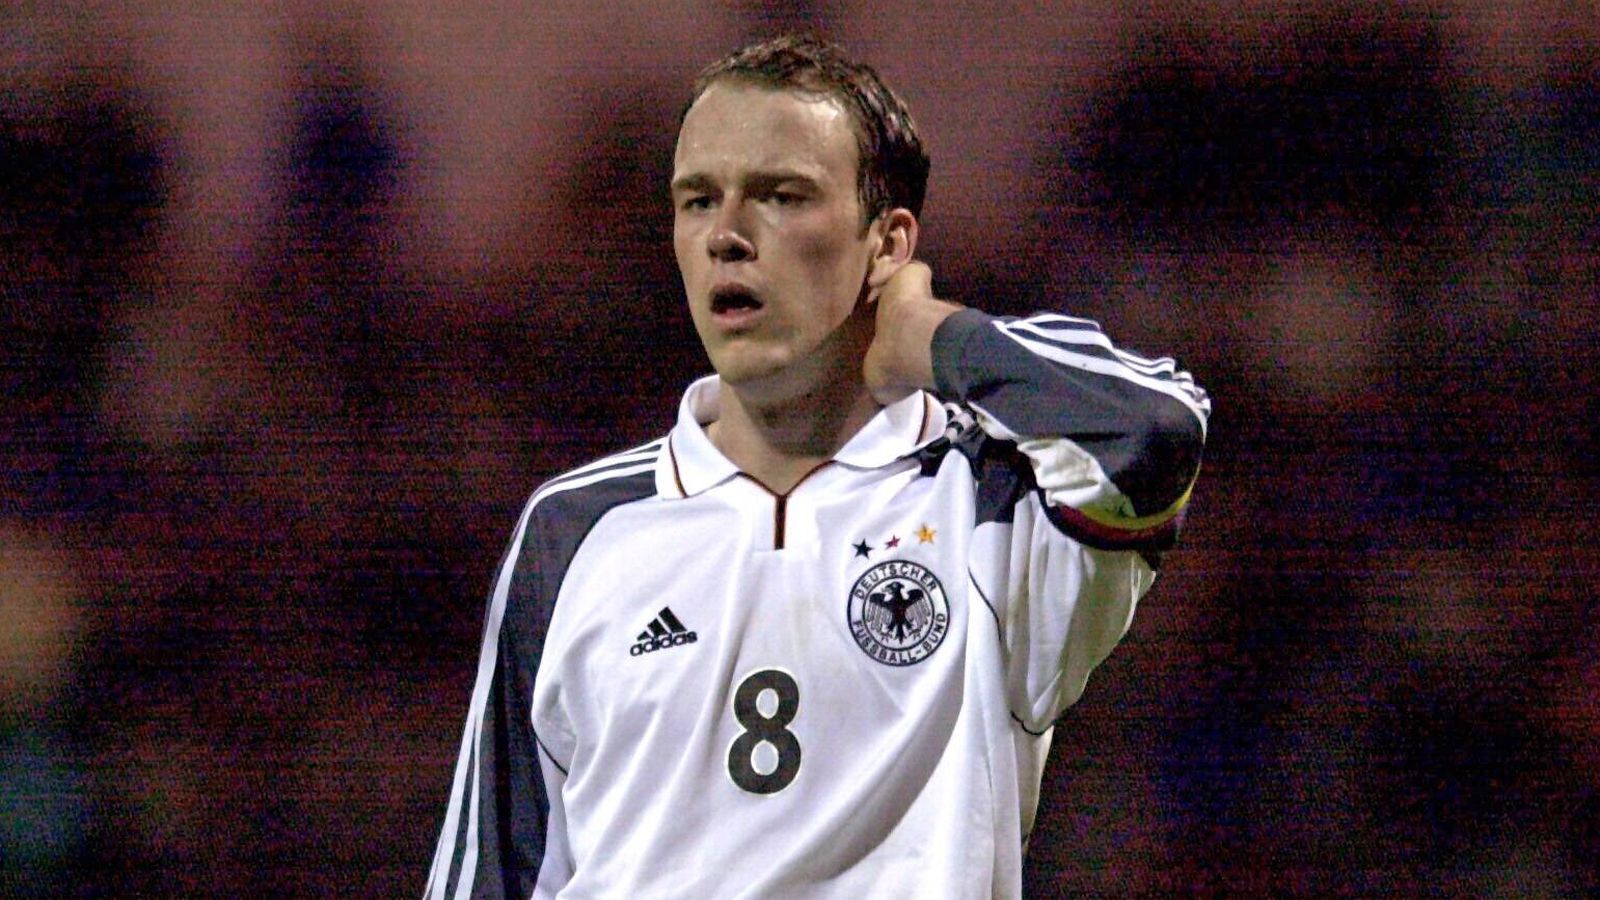 
                <strong>Rekordspieler Ernst</strong><br>
                Als Rekordspieler gilt seit Anfang der 2000er Jahre Fabian Ernst. Insgesamt stand er 31 Mal mit dem Adler auf der Brust für den Nachwuchs auf dem Platz. Dabei erzielte er immerhin zwei Treffer. Sein Debüt feierte er 1998, 2002 gelang ihm dann der Aufstieg in den A-Kader.
              